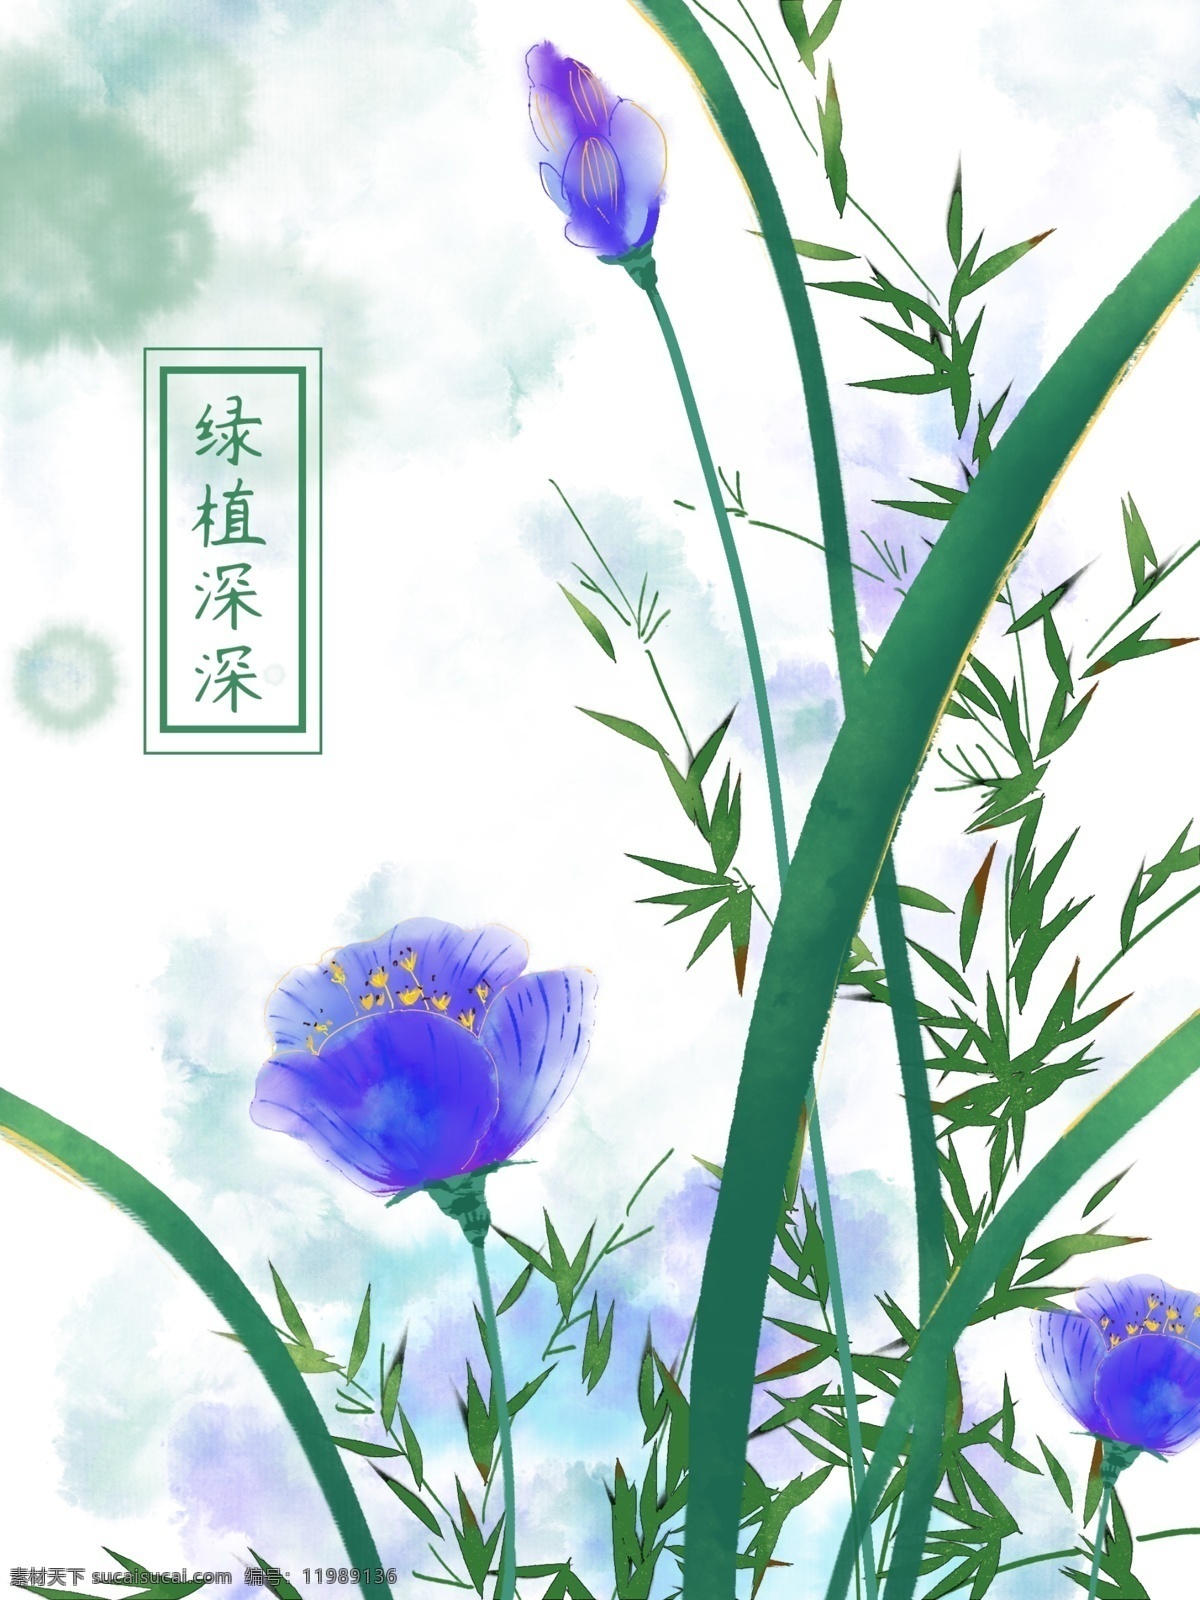 原创 手绘 素雅 中国 风 水墨 背景 翠竹 花草 装饰画 中国风 水彩背景 蓝色花朵 绿叶